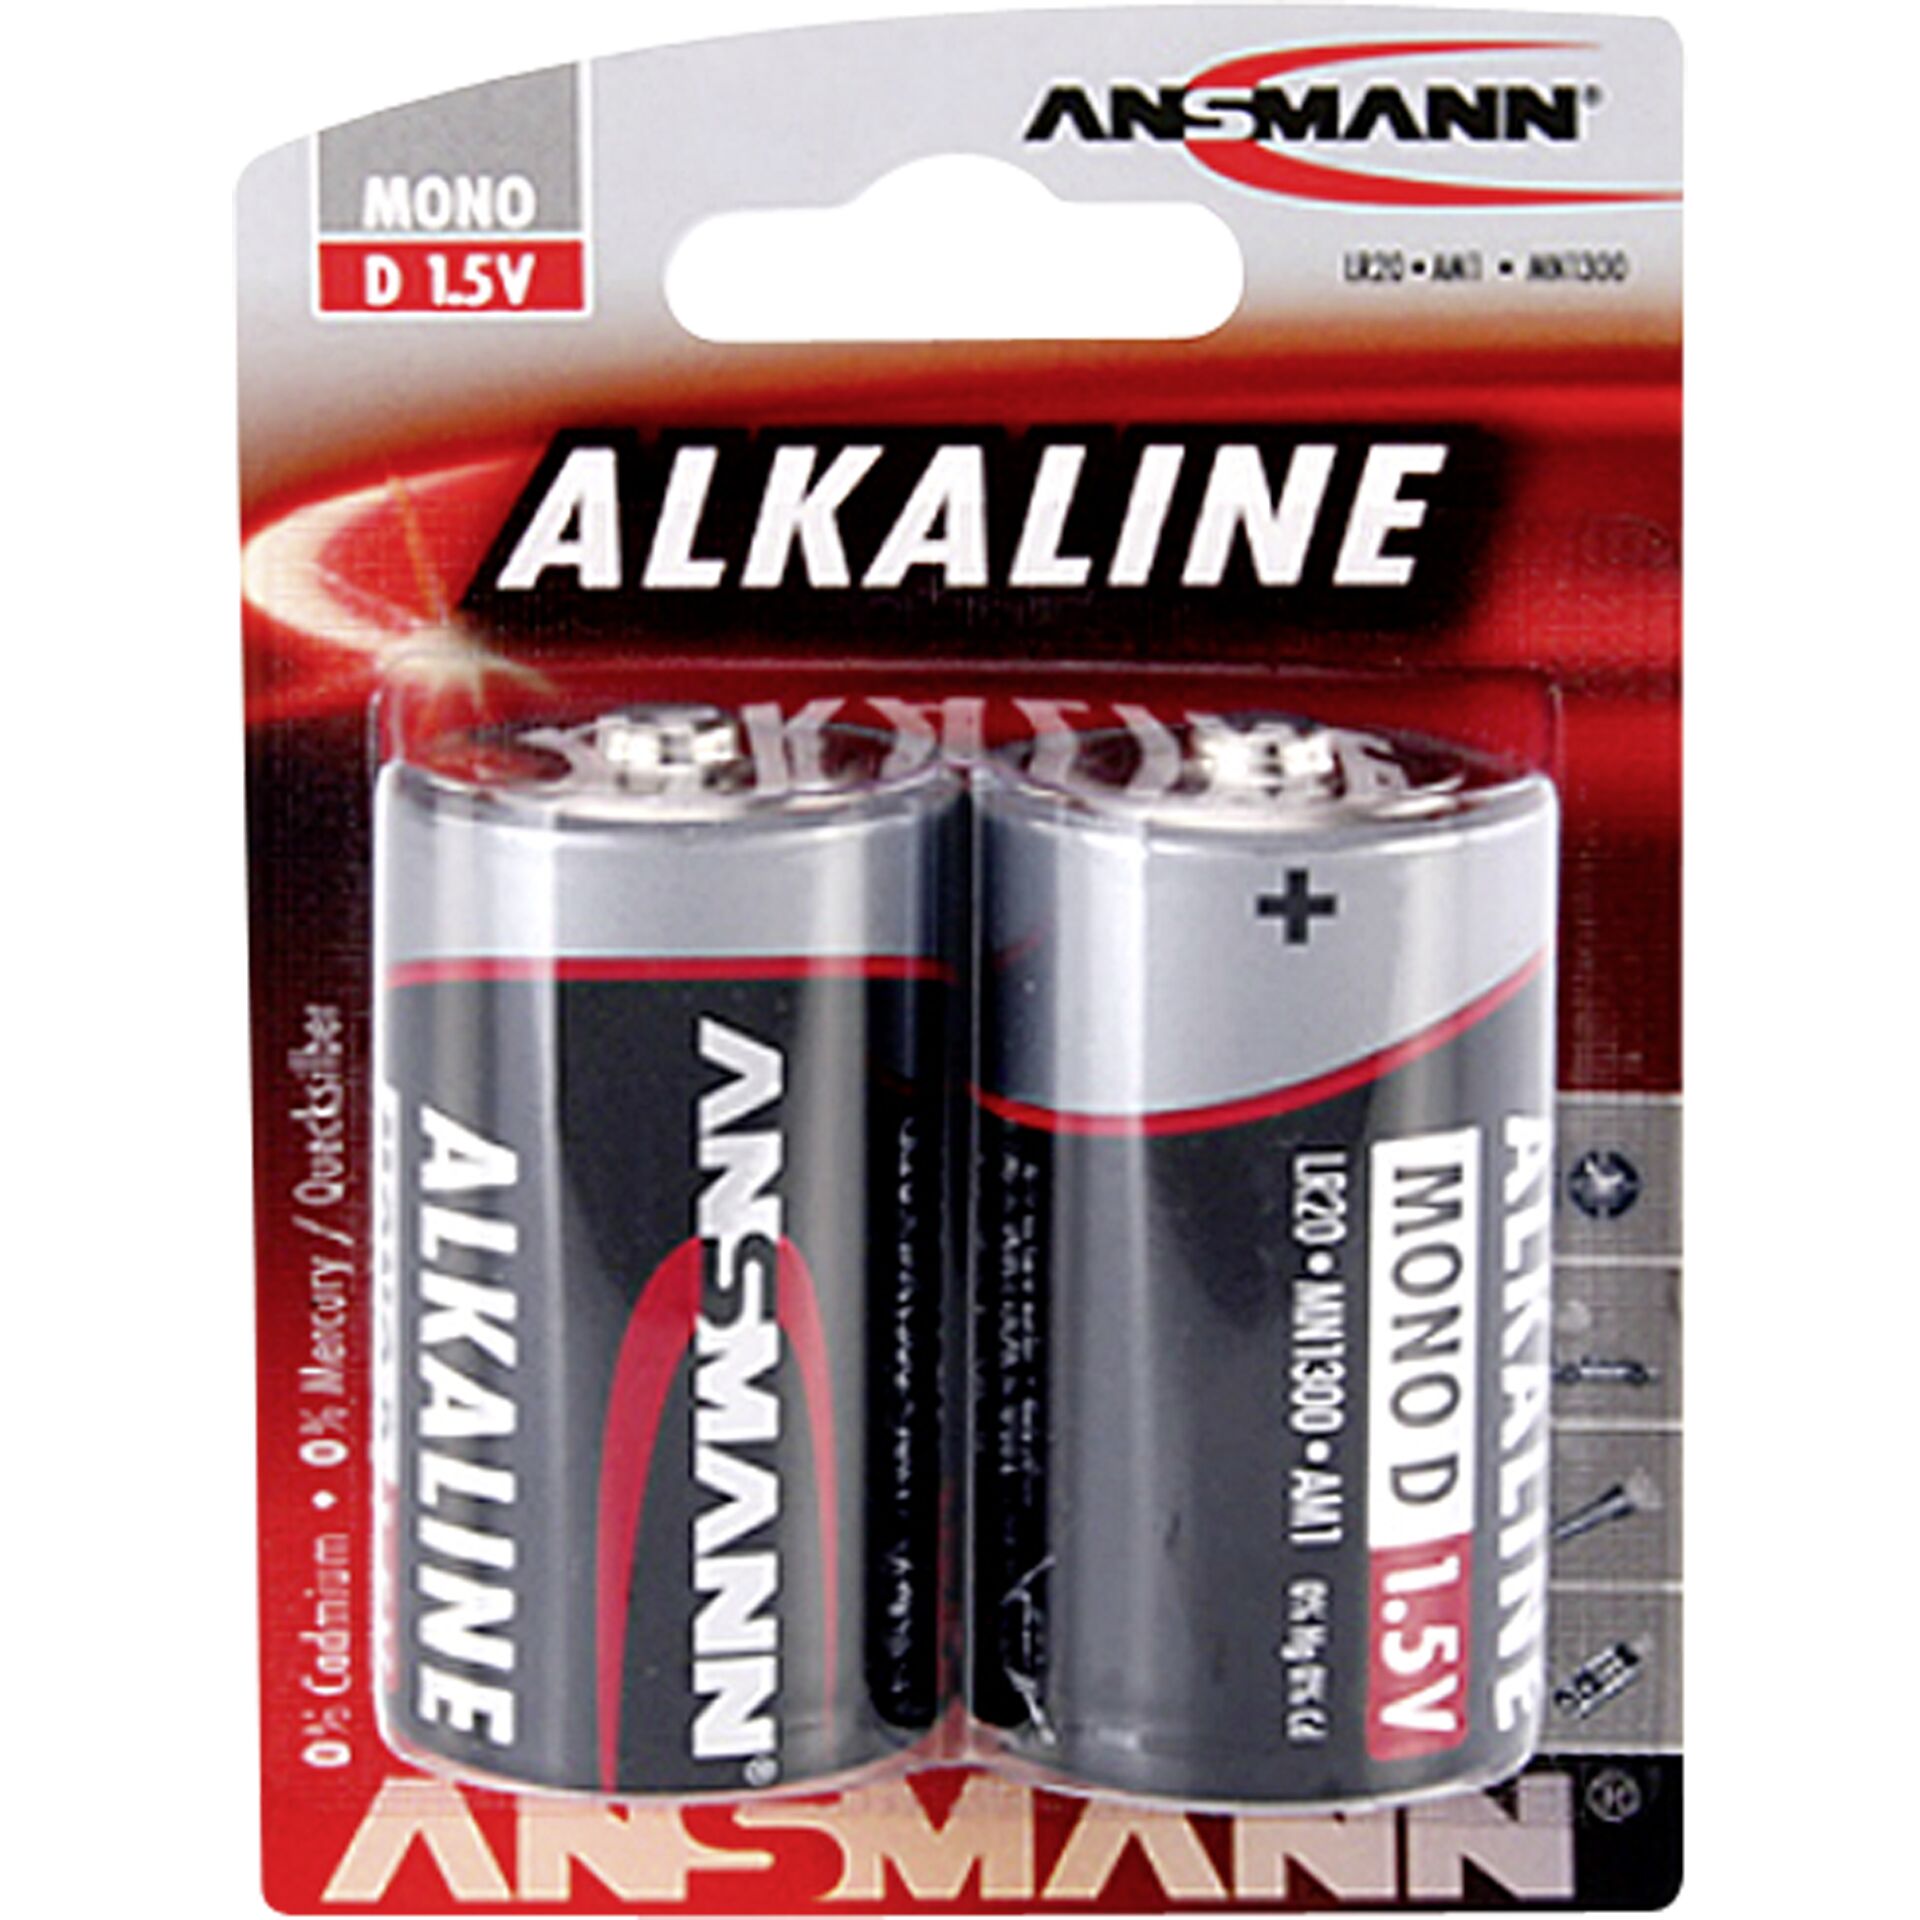 1x2 Ansmann Alkaline Mono D LR 20 red-line         1514-0000